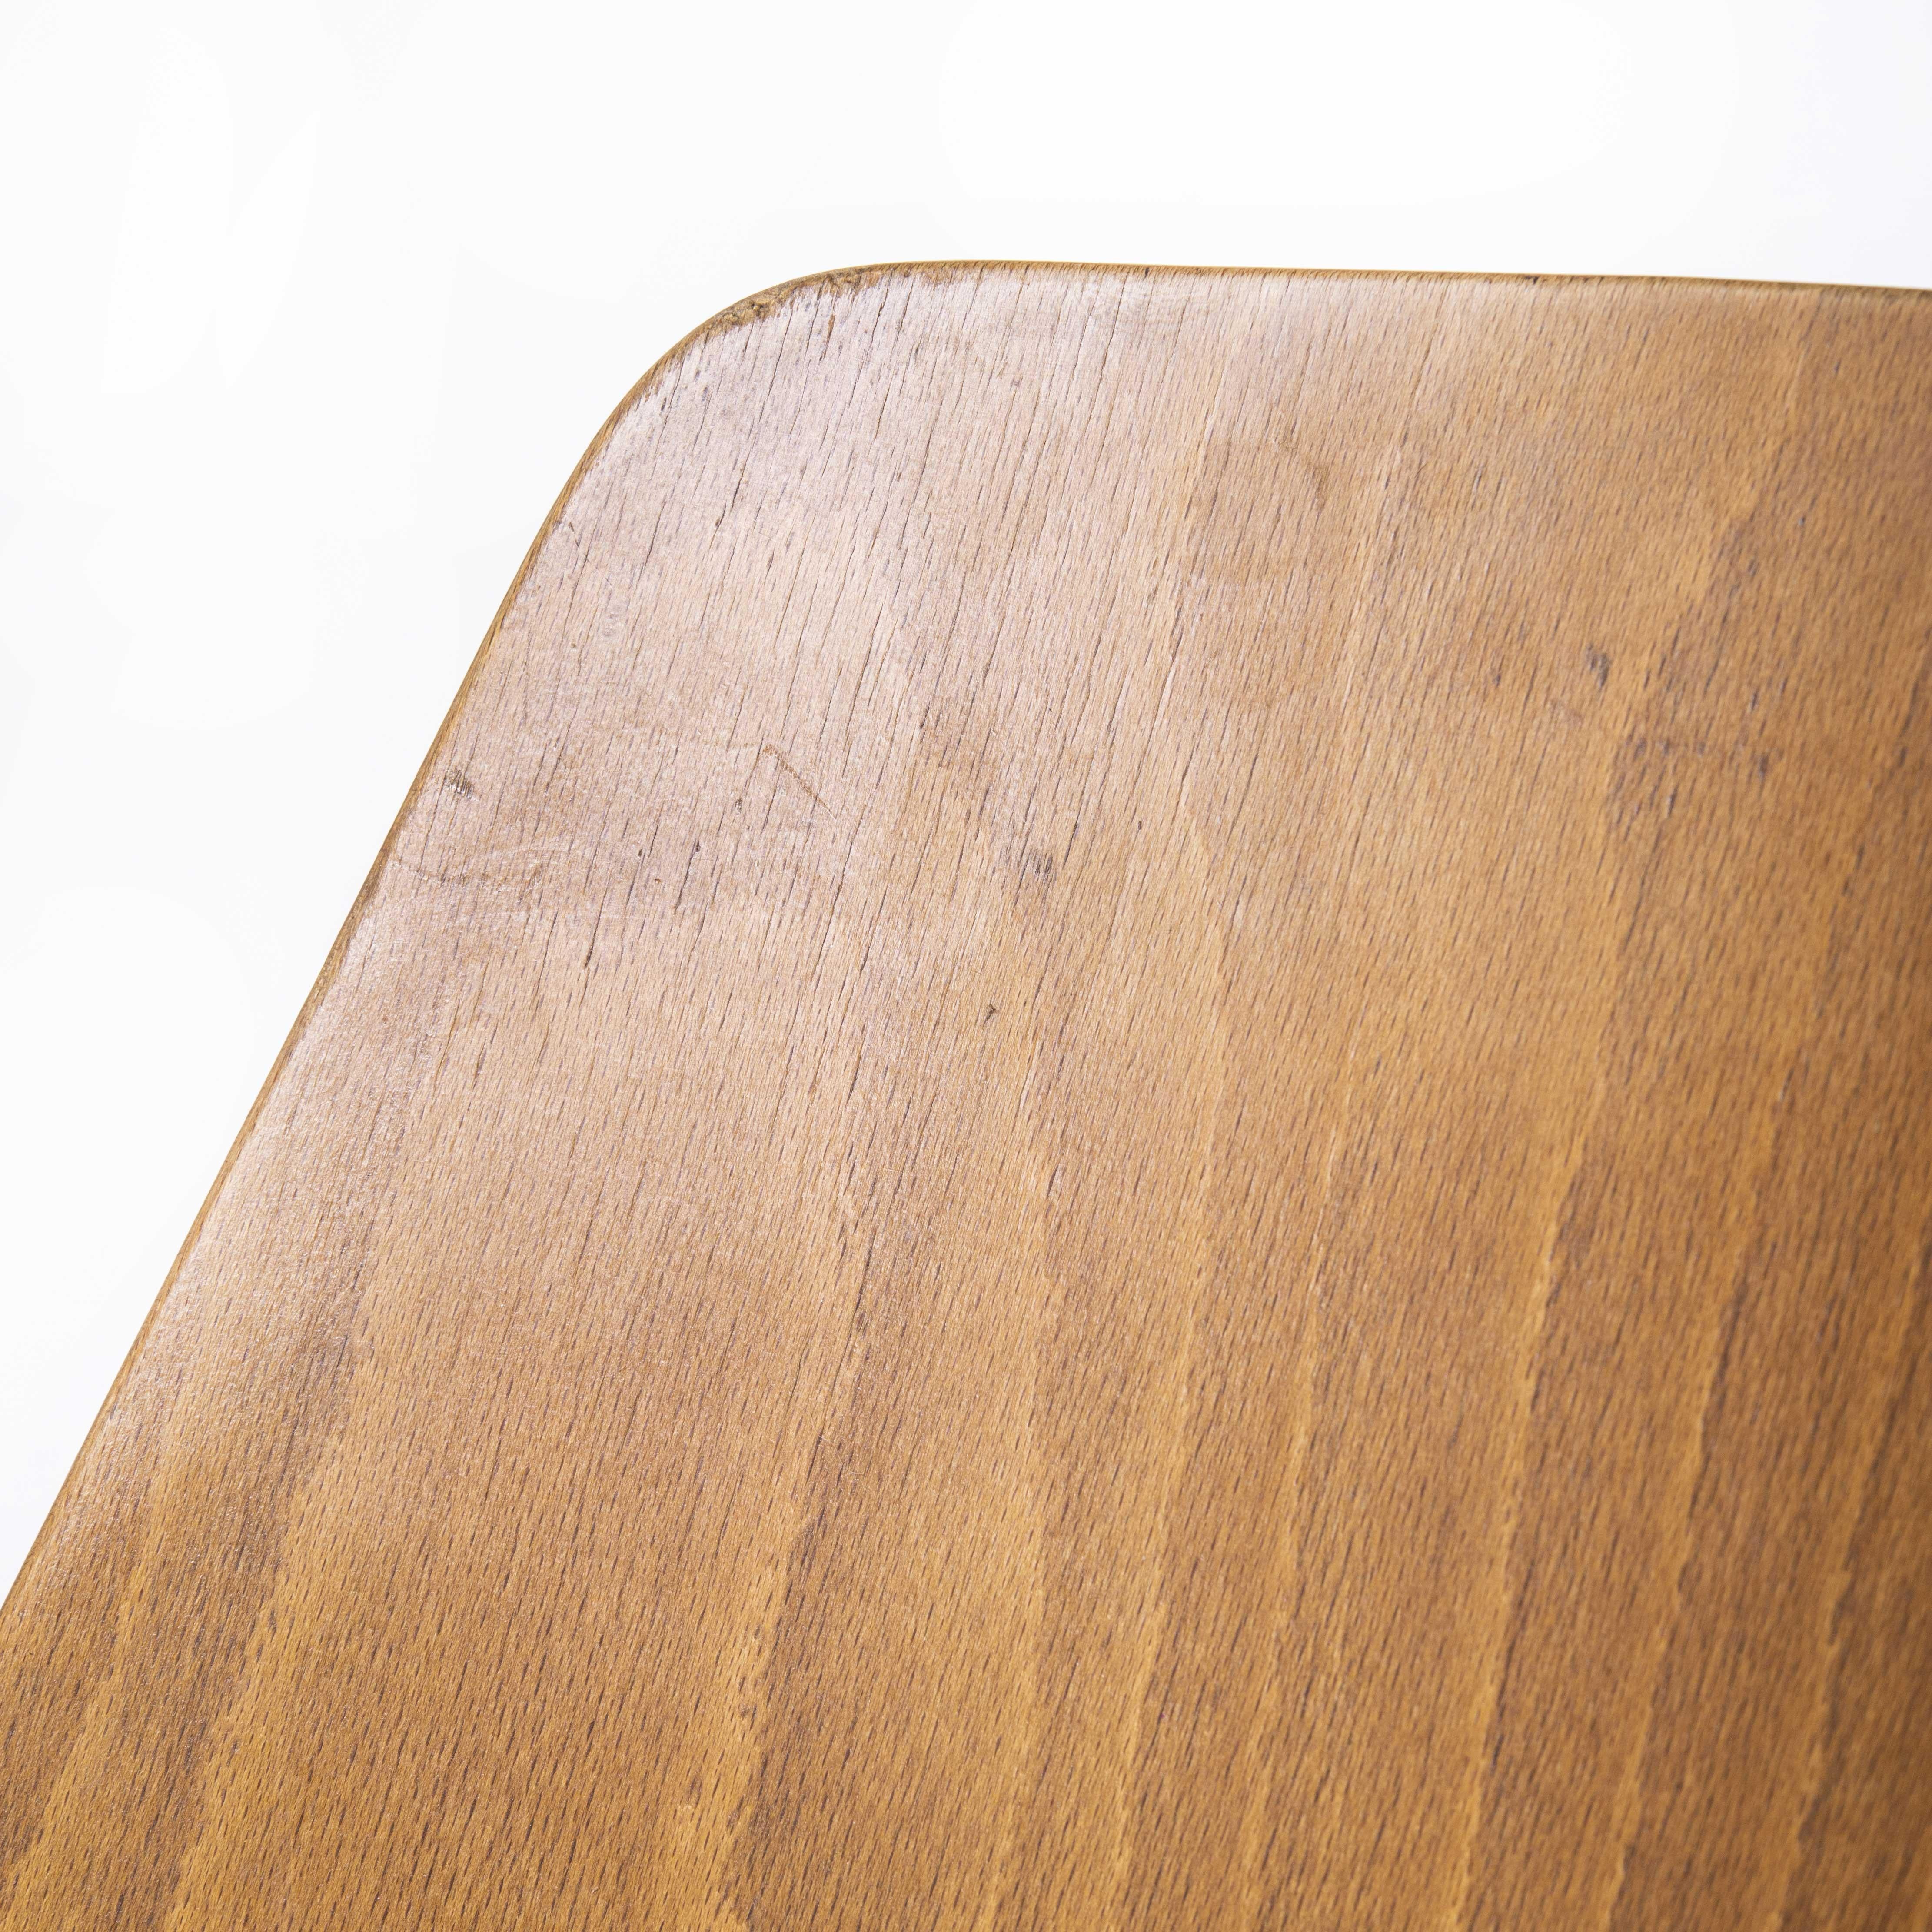 Chaise de salle à manger mondor en bois de hêtre Baumann des années 1960 - ensemble de quatre pièces

Chaise mondor en bois de hêtre Baumann des années 1960 - ensemble de quatre. Chaise bistro classique en hêtre fabriquée en France par le